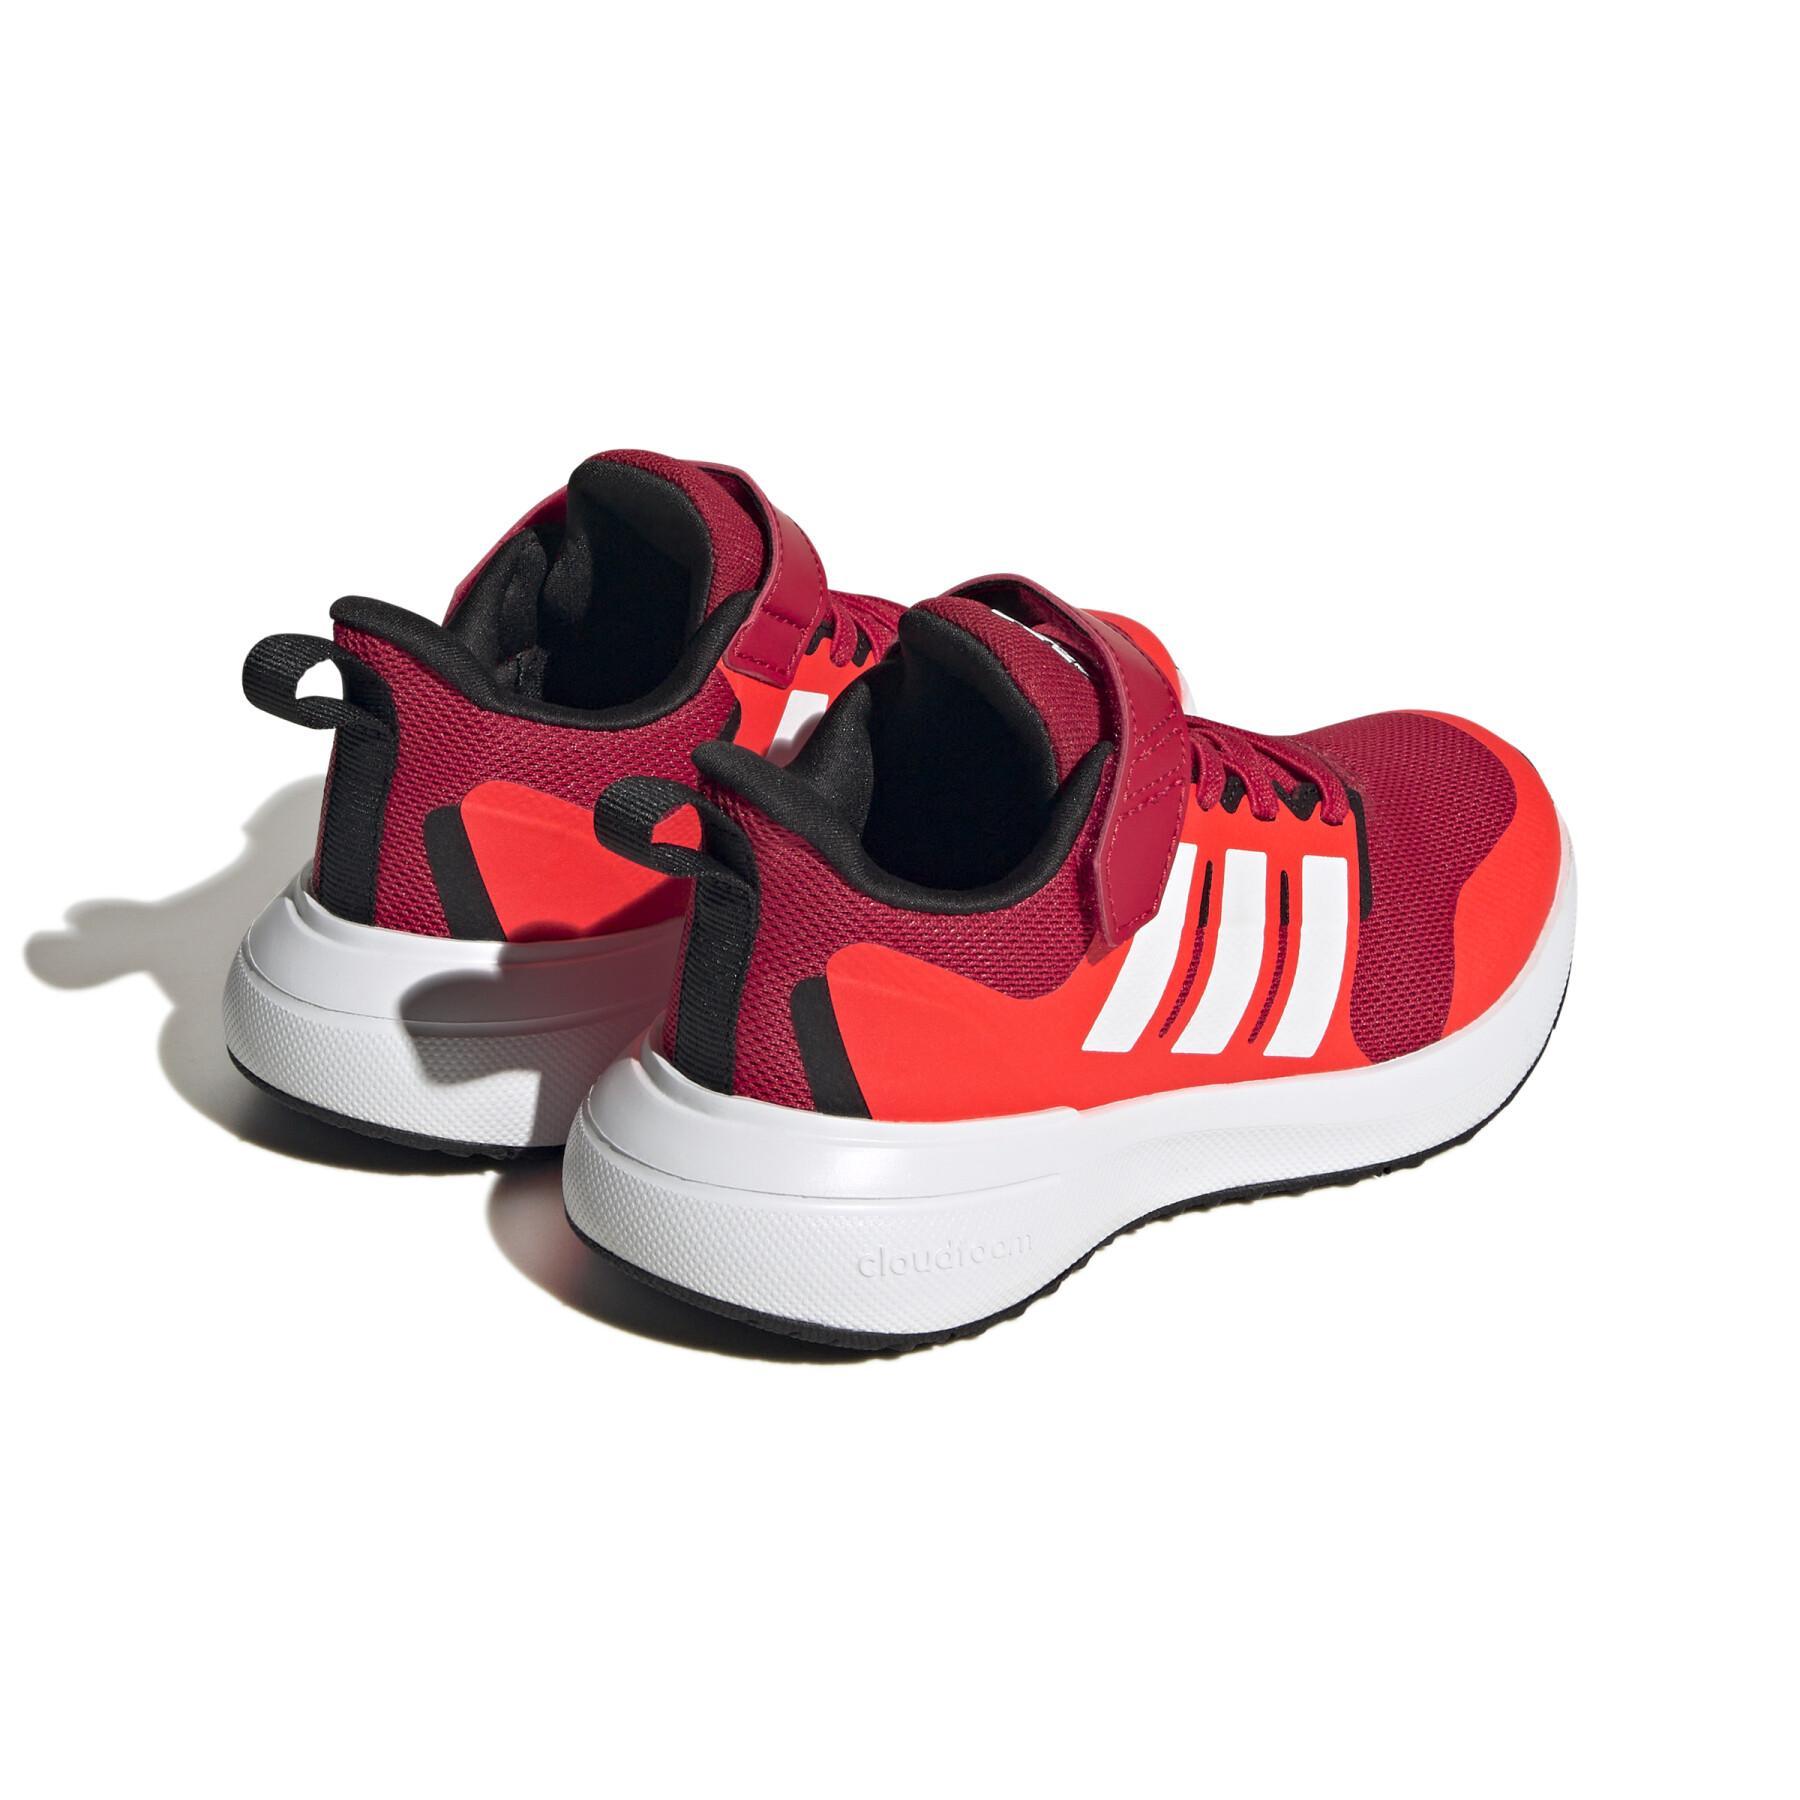 Chaussures de running enfant adidas FortaRun 2.0 Cloudfoam